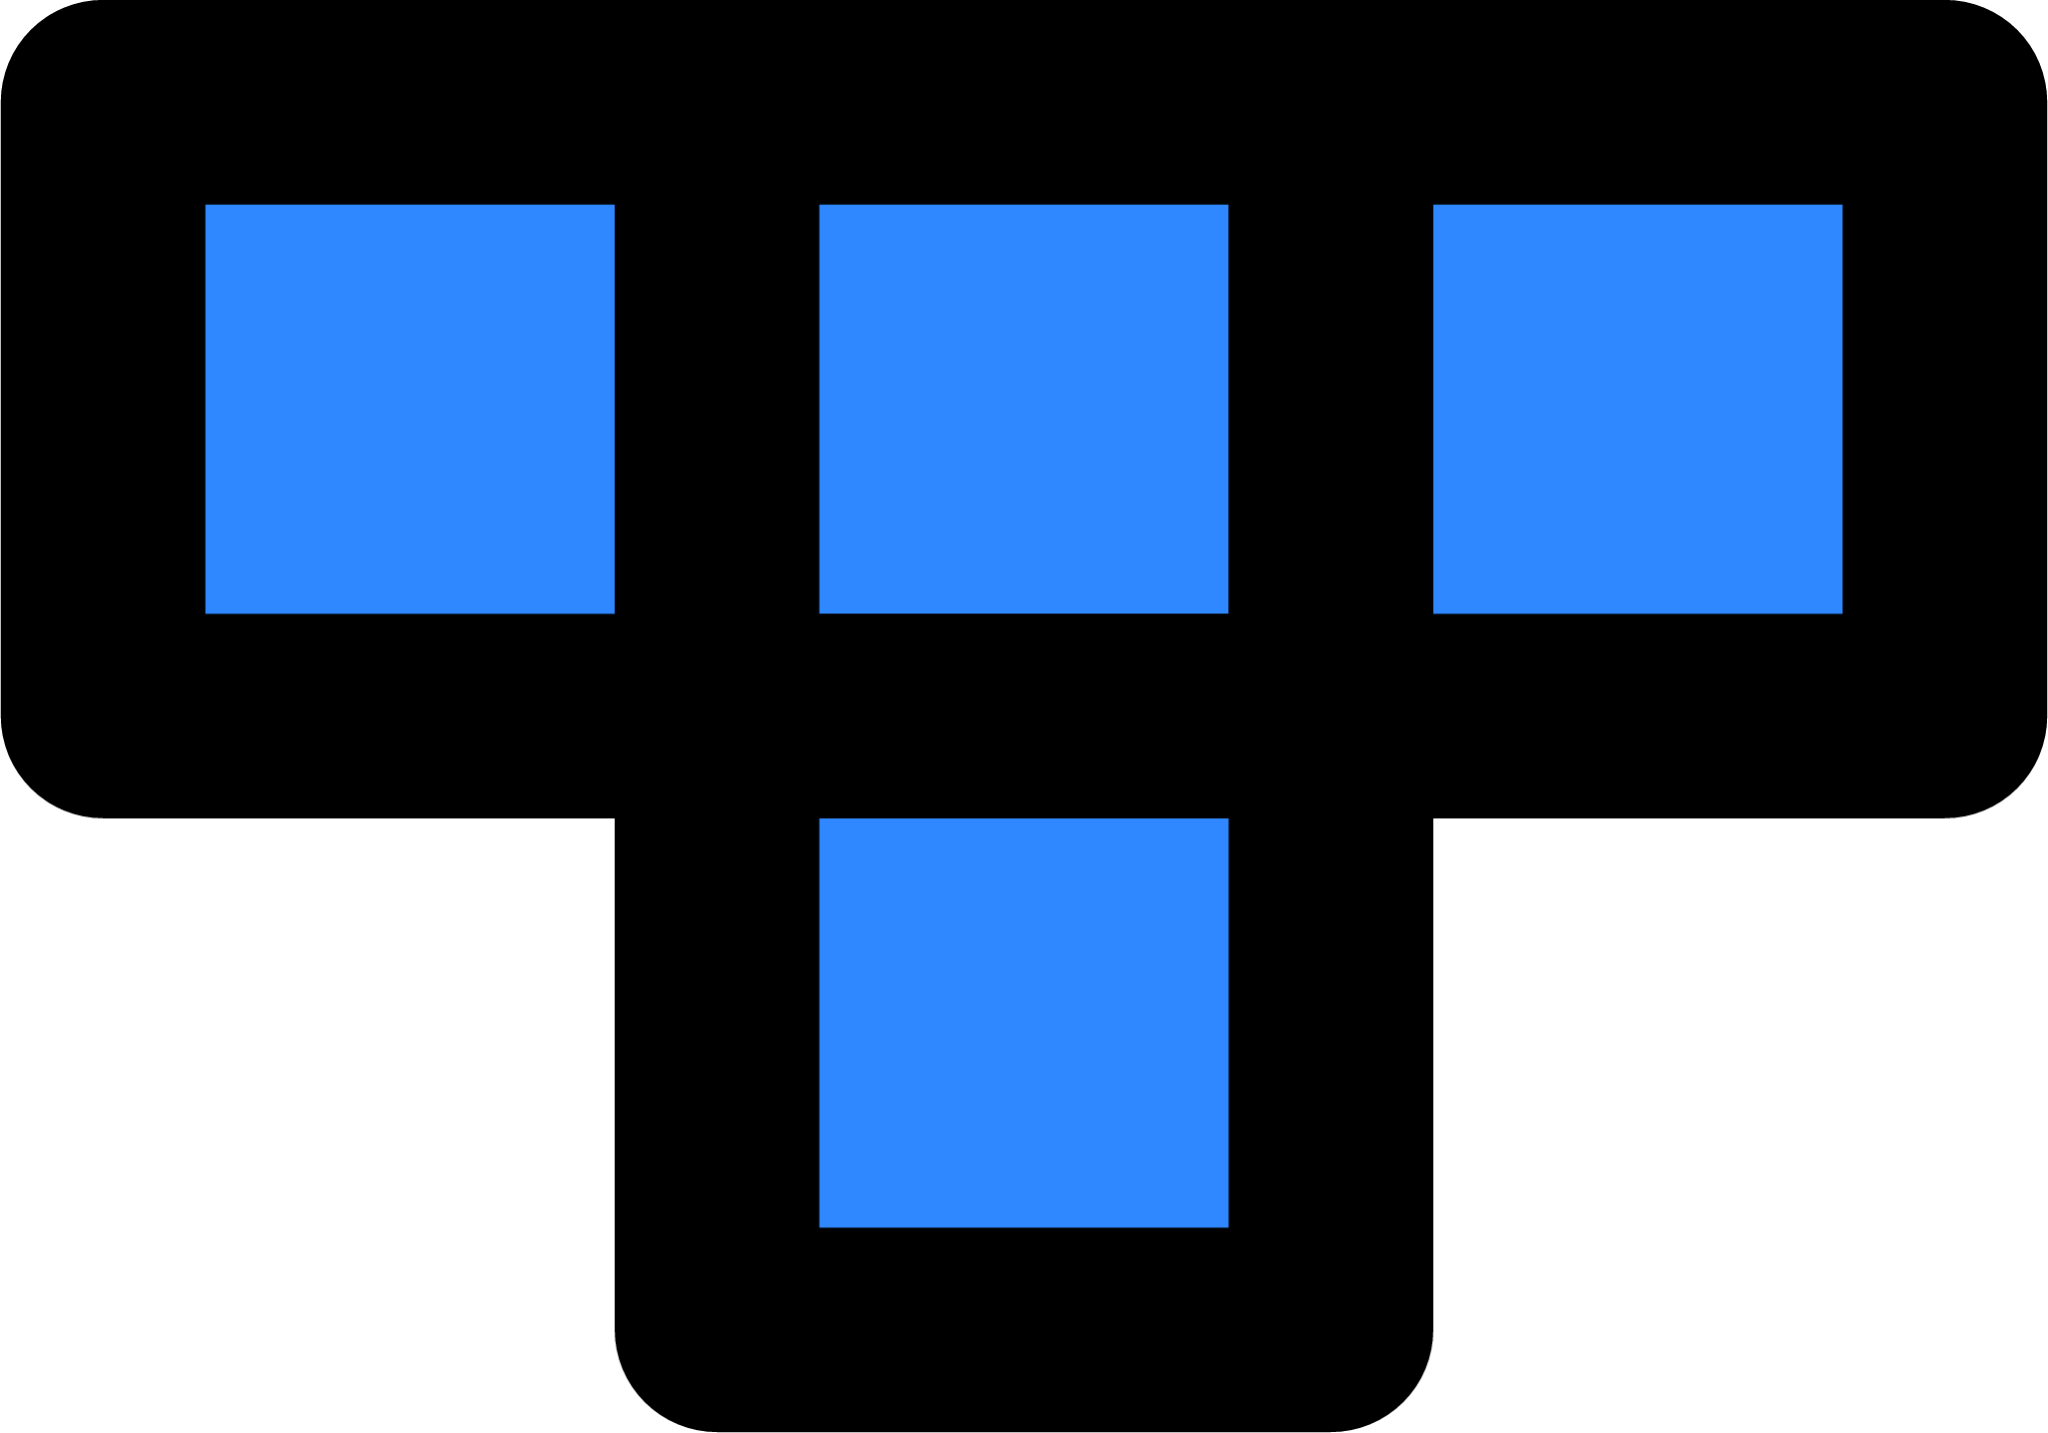 block four icon